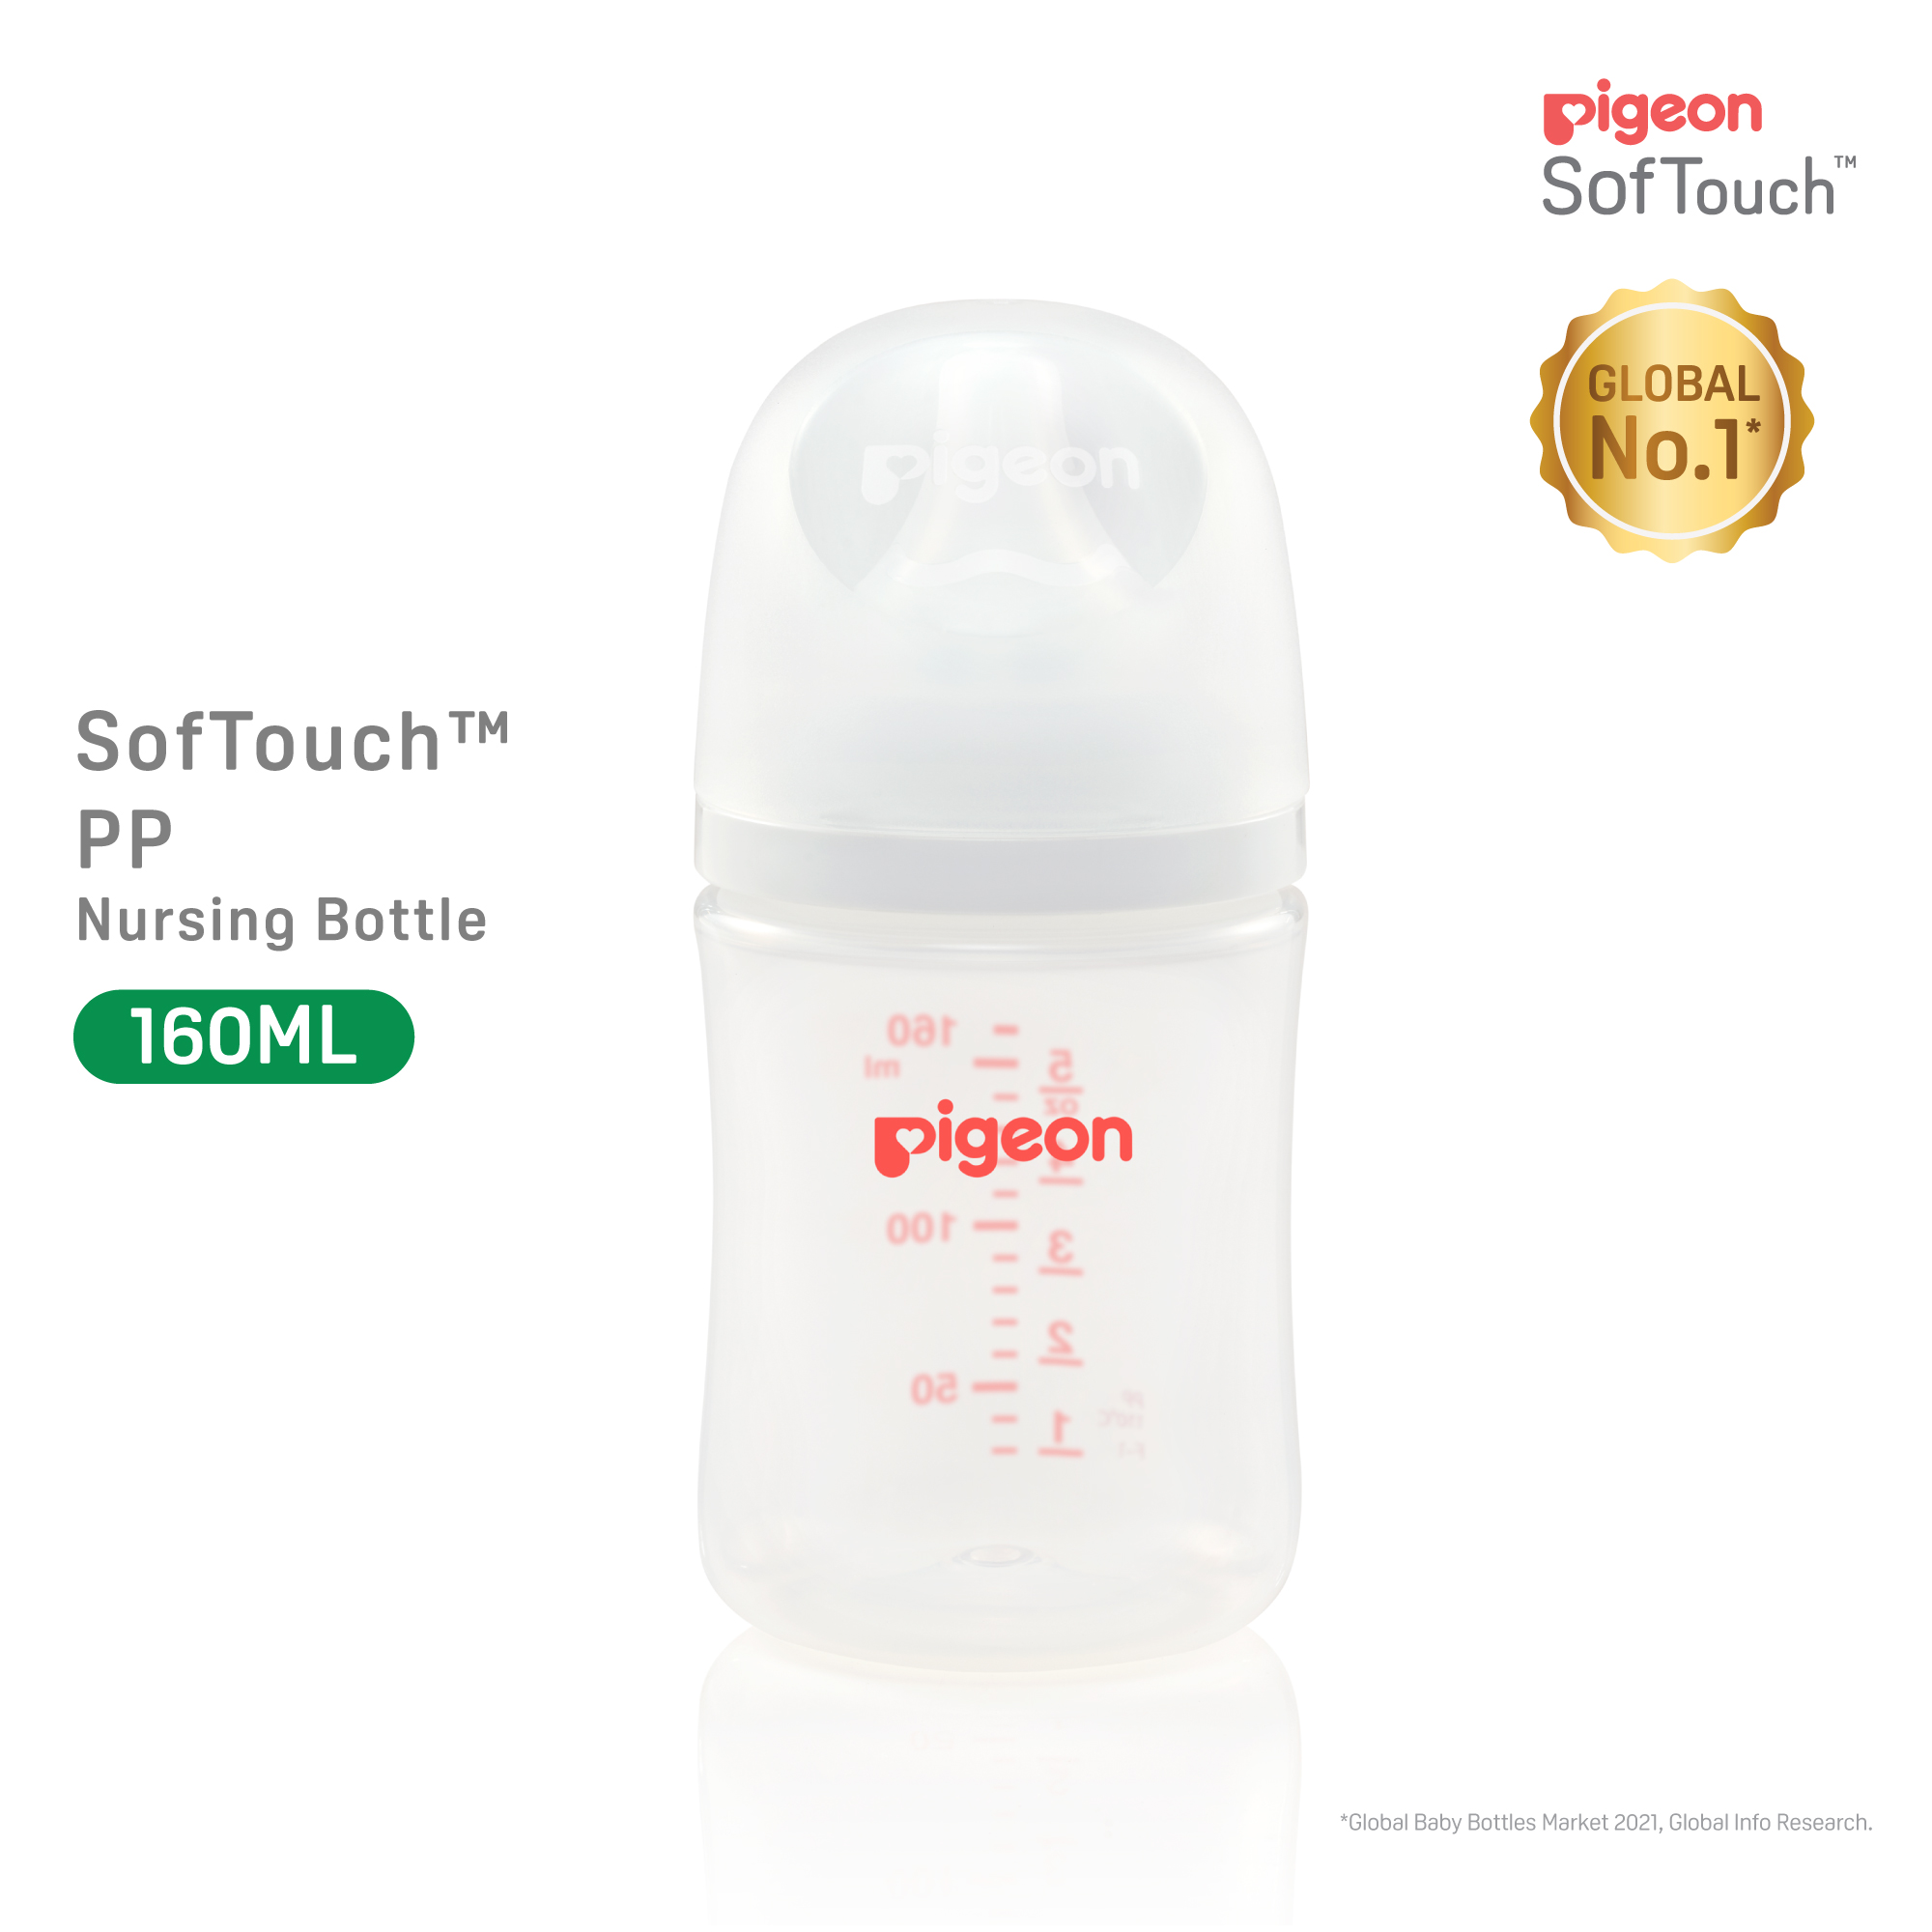 Pigeon SofTouch 3 Nursing Bottle PP 160ml Logo (PG-79452)